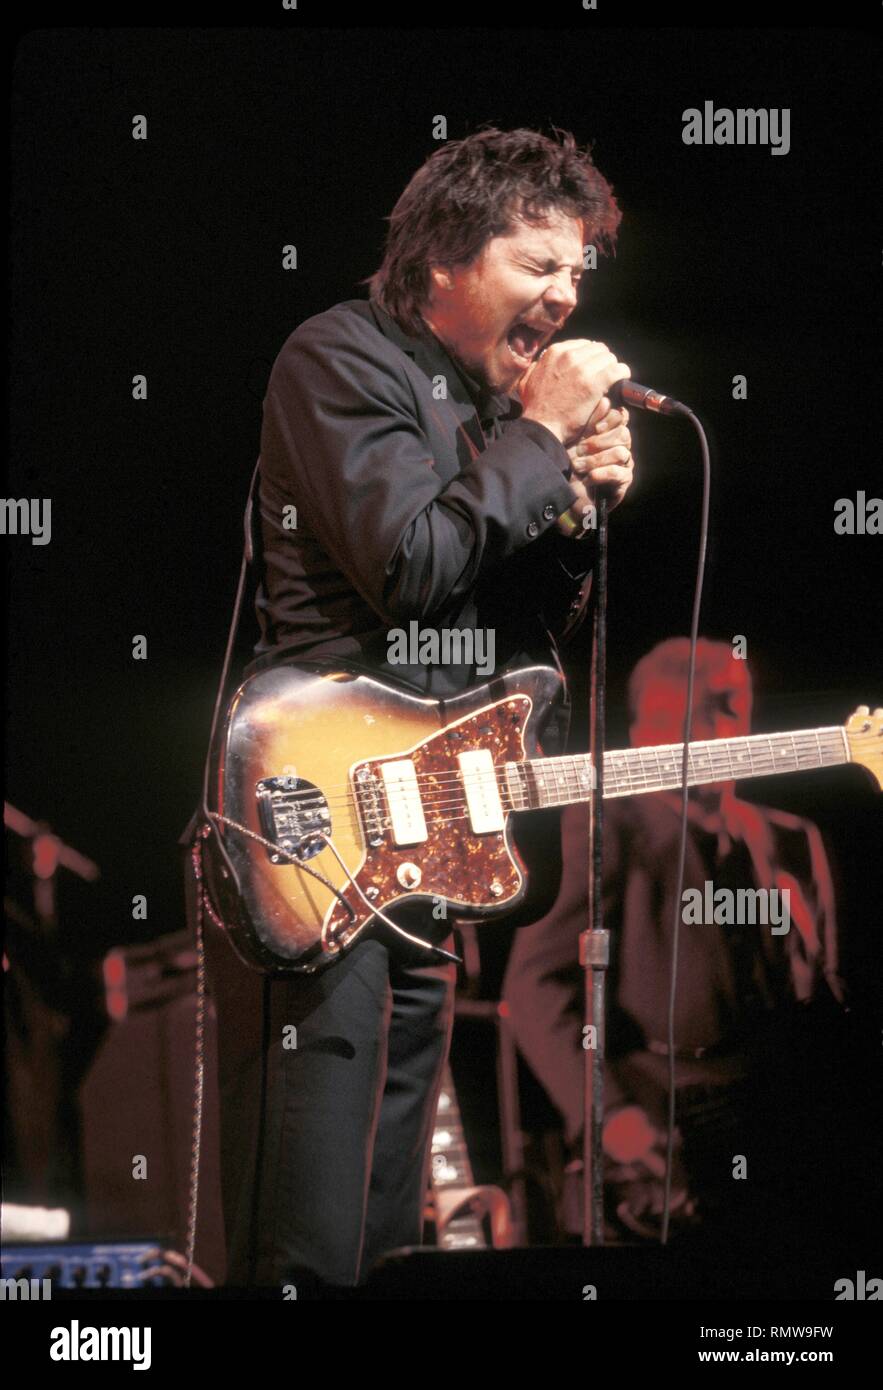 Cantante, compositore e chitarrista Jeff Tweedy della rock band Wilco è mostrato esibirsi sul palco durante un 'live' aspetto di concerto. Foto Stock